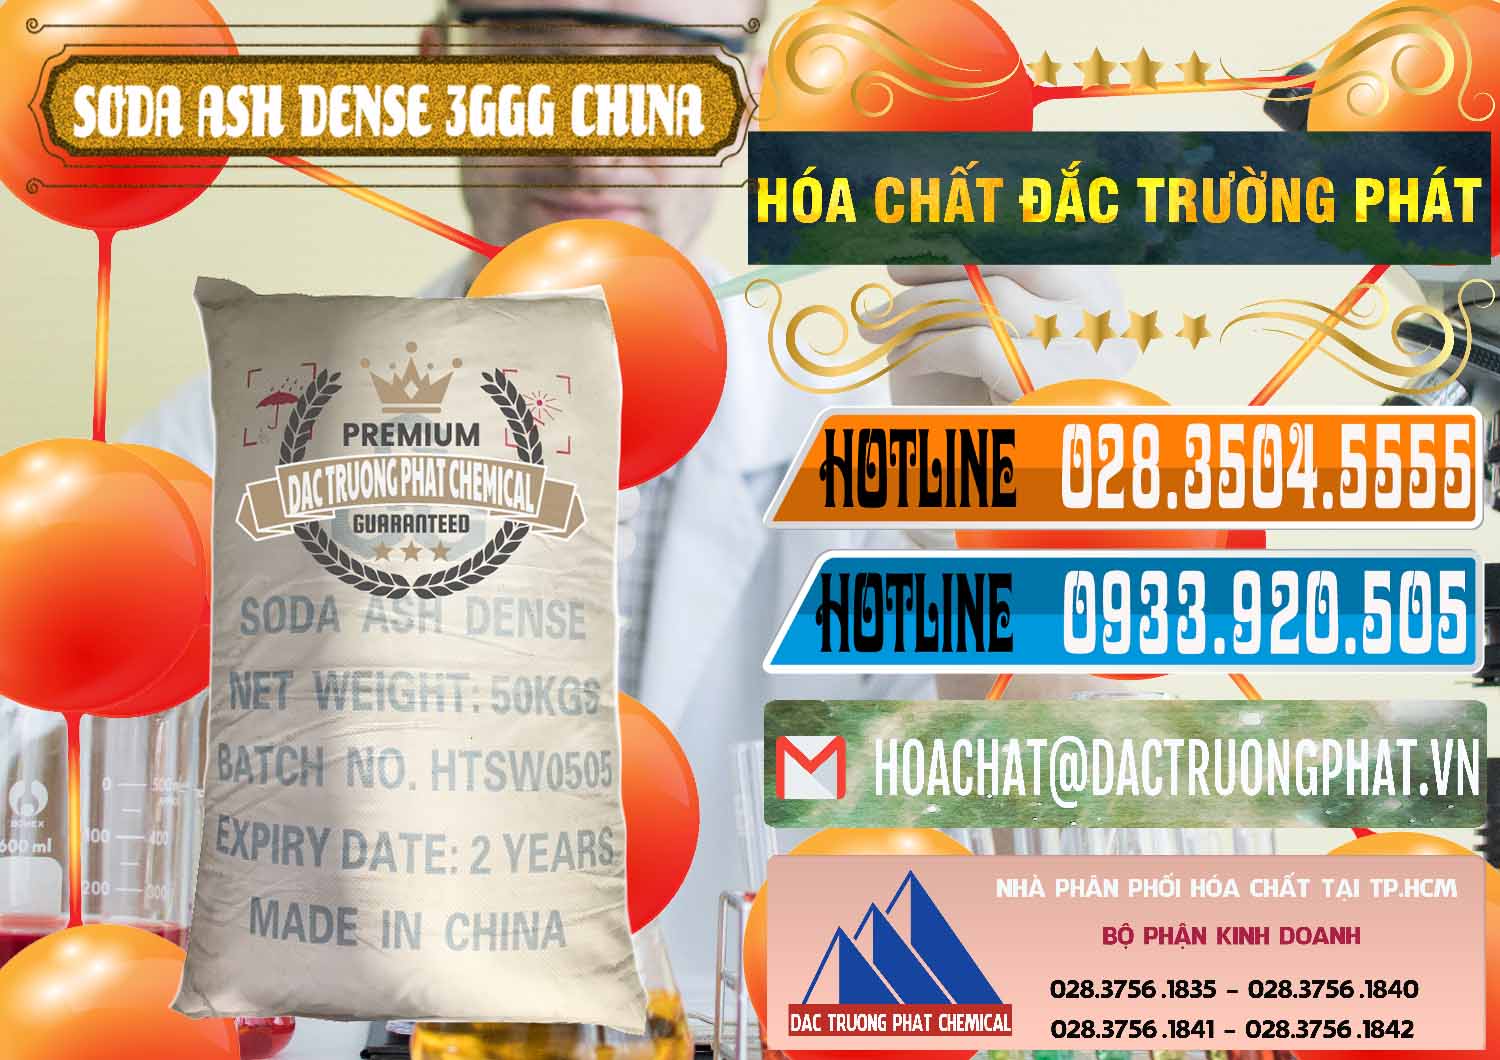 Nơi bán & cung ứng Soda Ash Dense - NA2CO3 3GGG Trung Quốc China - 0335 - Cty chuyên kinh doanh _ cung cấp hóa chất tại TP.HCM - stmp.net